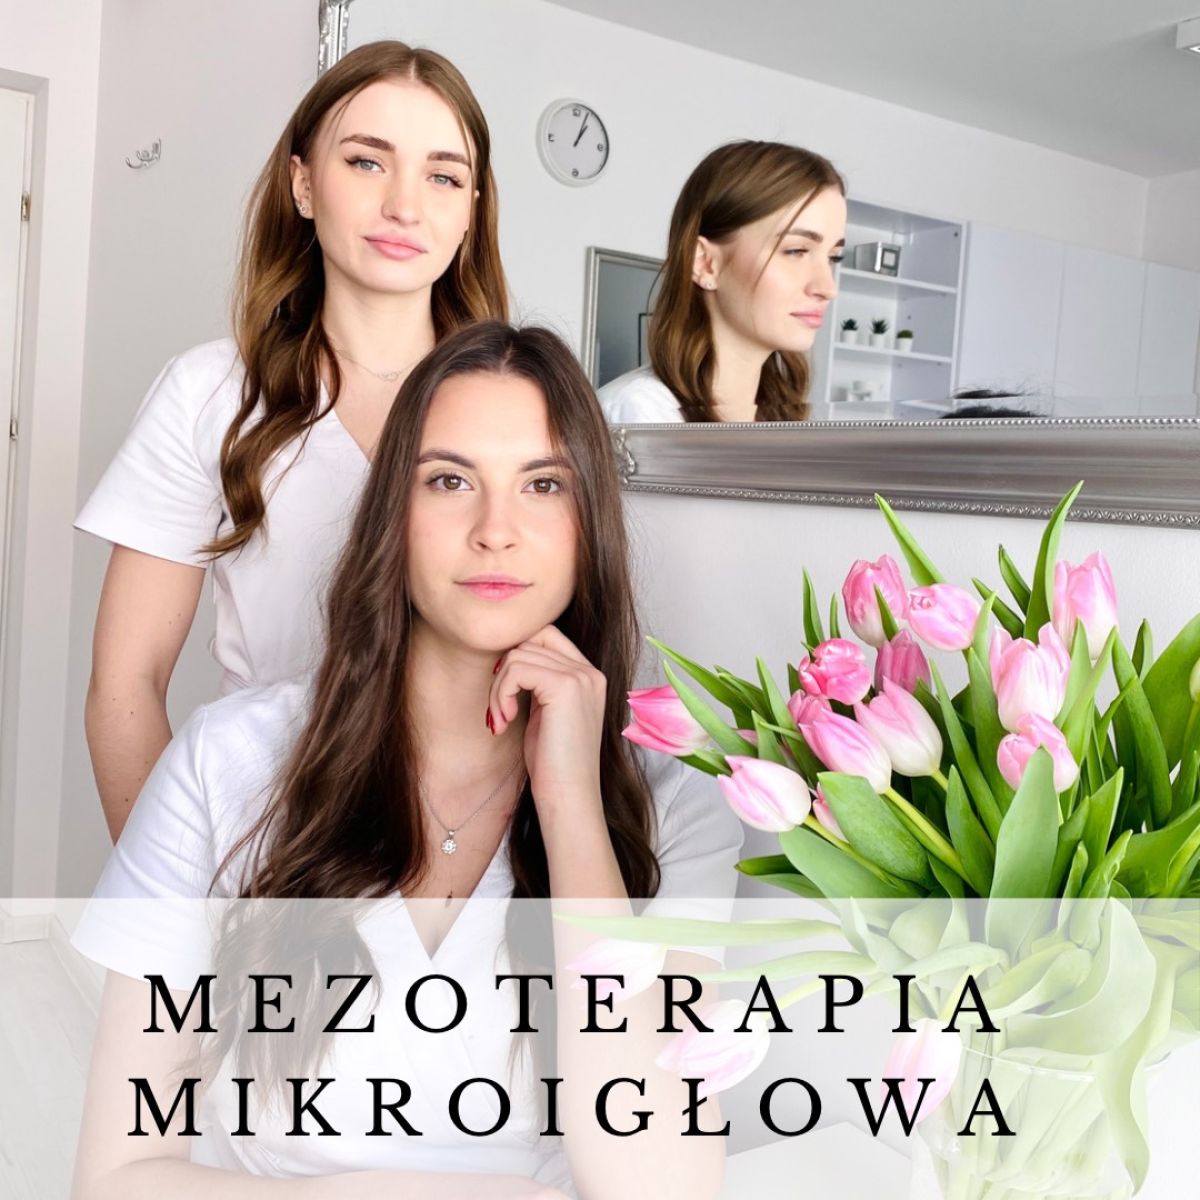 Mezoterapia mikroigłowa - Bright Therapy w Nowym Targu